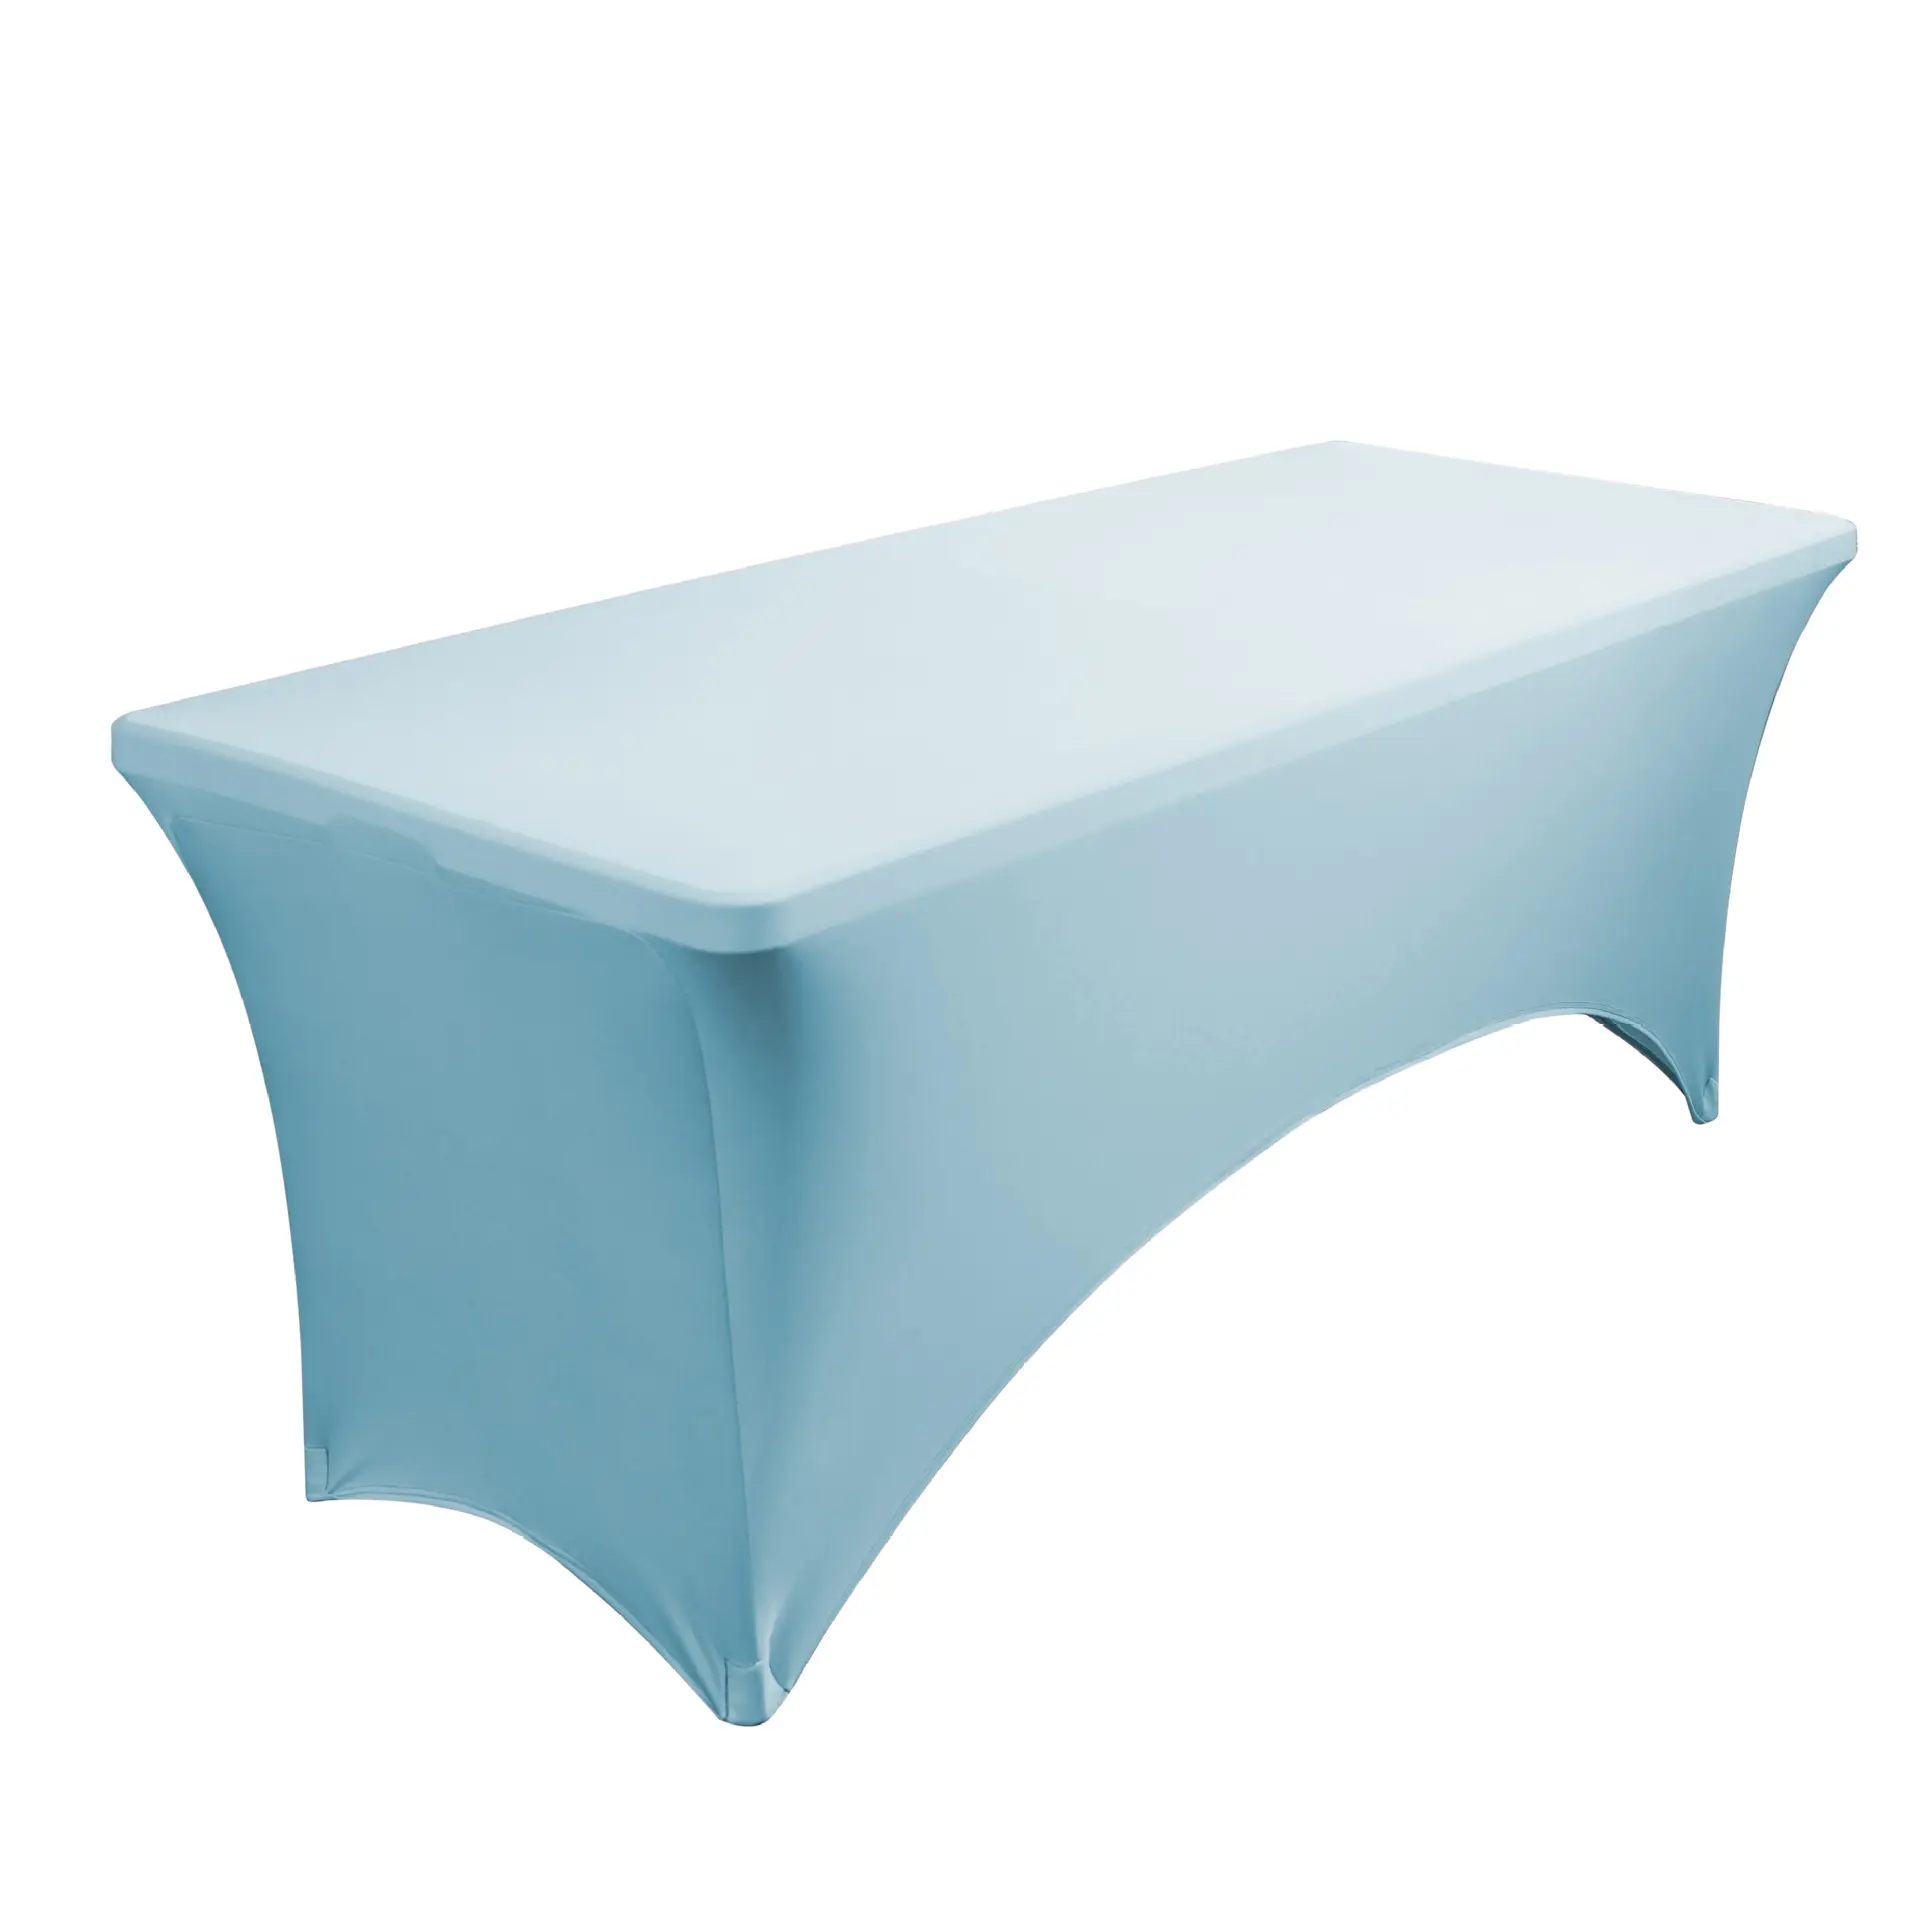 Housses de table ajustées pour tables à 6 pieds Housses de table en spandex bleu clair Vêtements de table de 6 pieds pour tables rectangulaires à 6 pieds